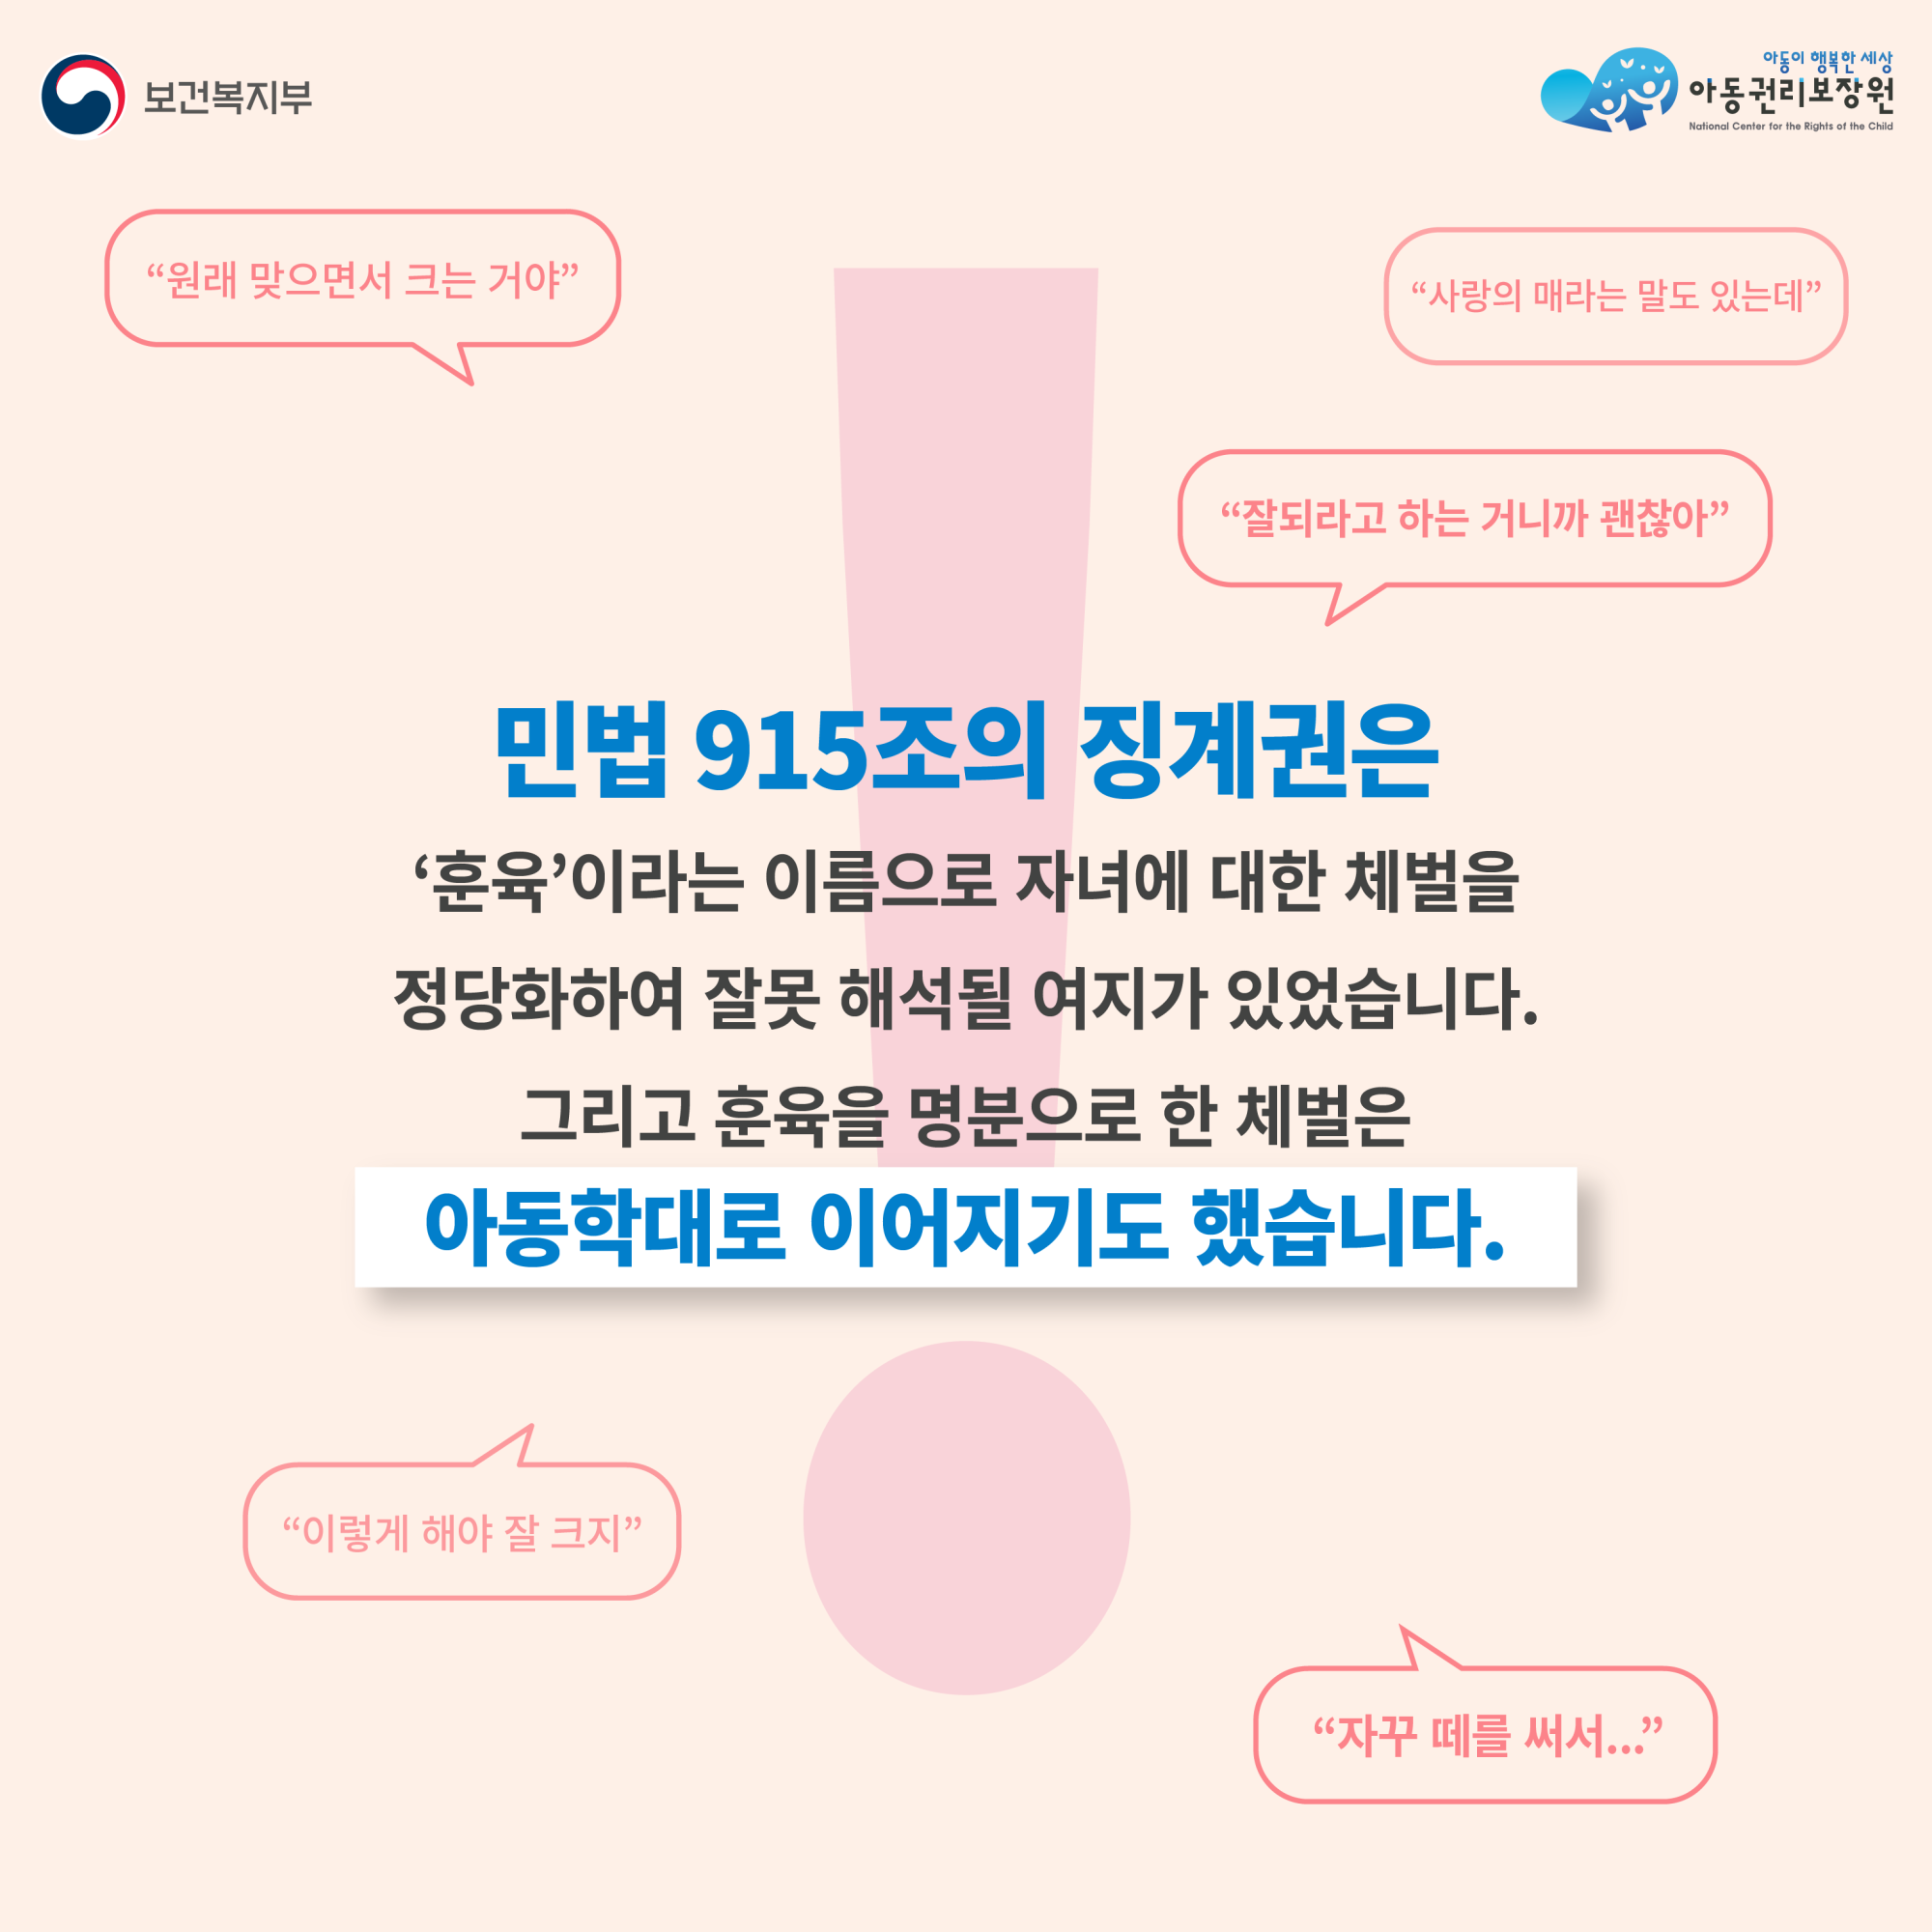 아동학대예방캠페인_카드뉴스0913-03